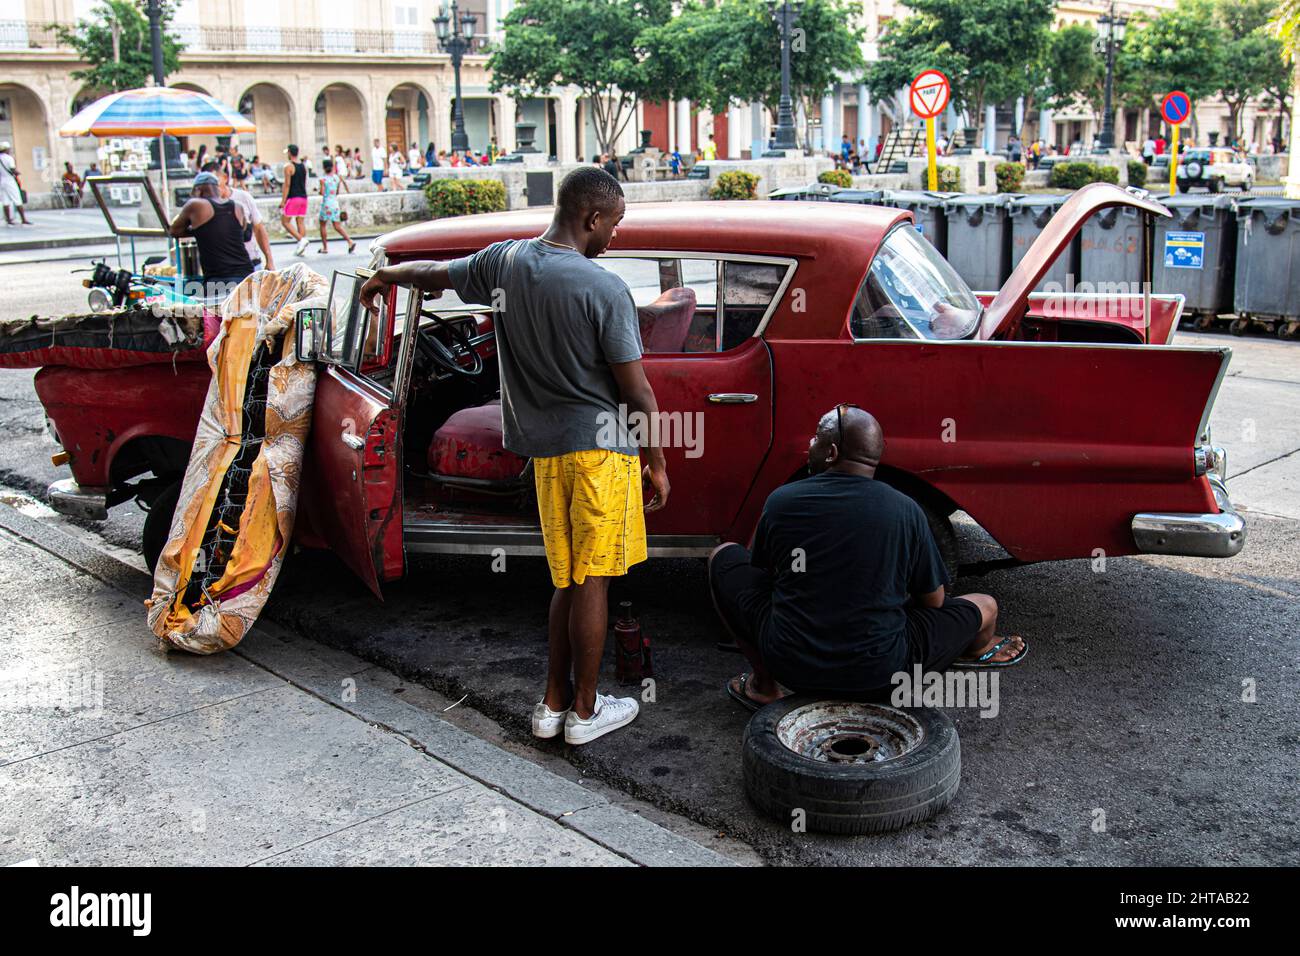 Zwei kubanische Männer sprechen während sie in Havanna, Kuba, an der Befestigung eines Reifens an einem Auto arbeiten, mit einer Matratze auf der Haube eines alten amerikanischen Oldtimer. Stockfoto